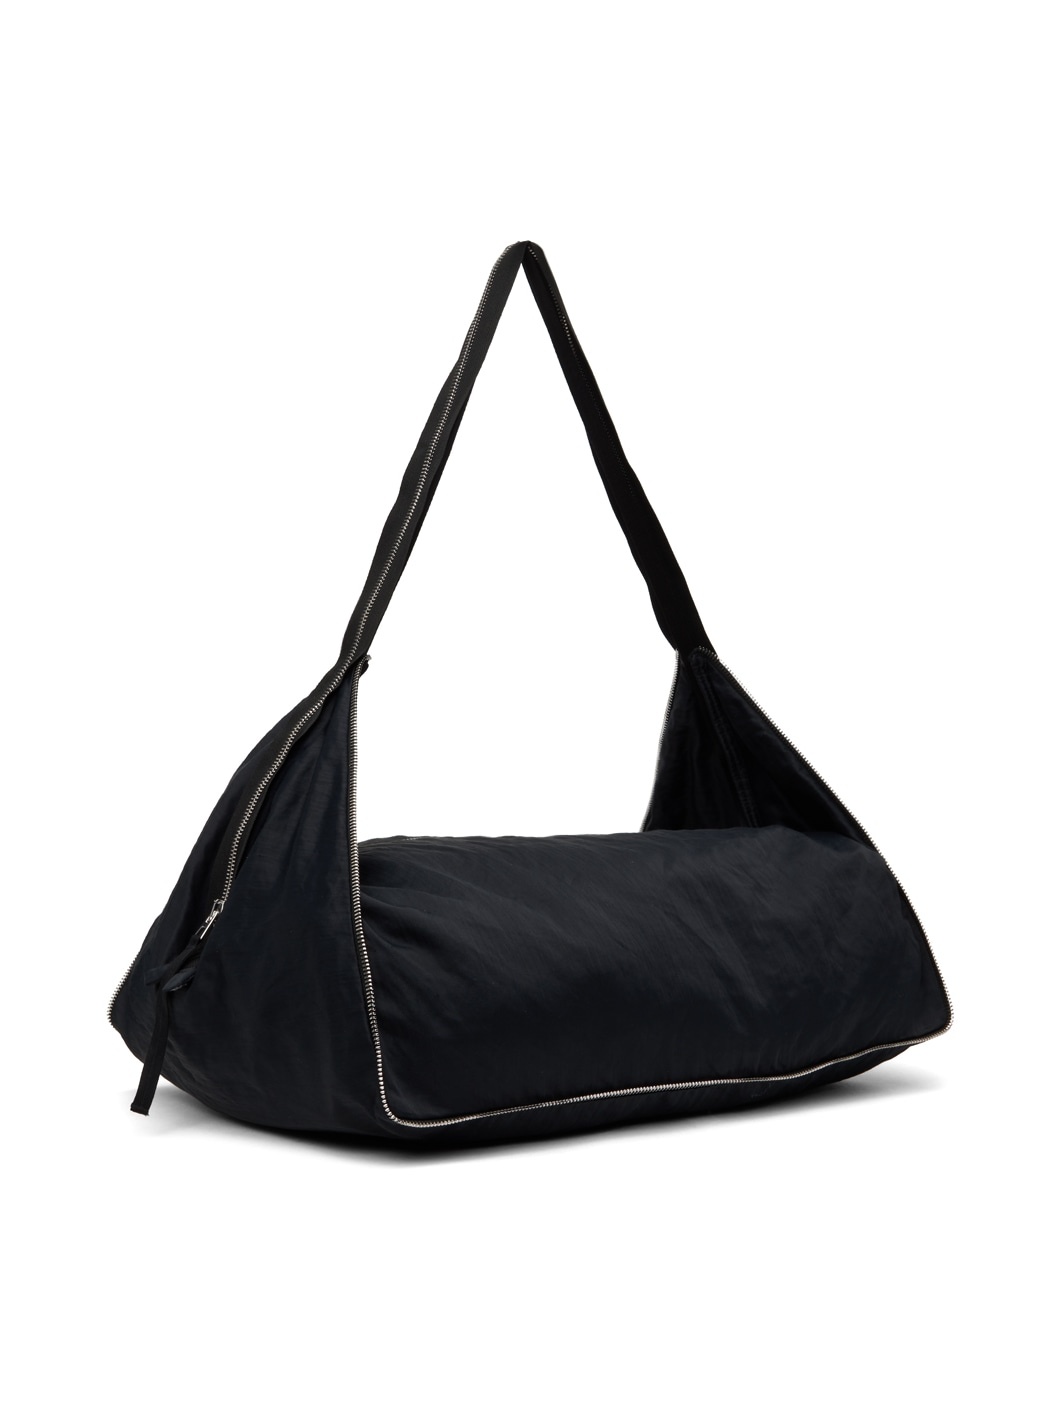 Black Cailleach Bag - 3